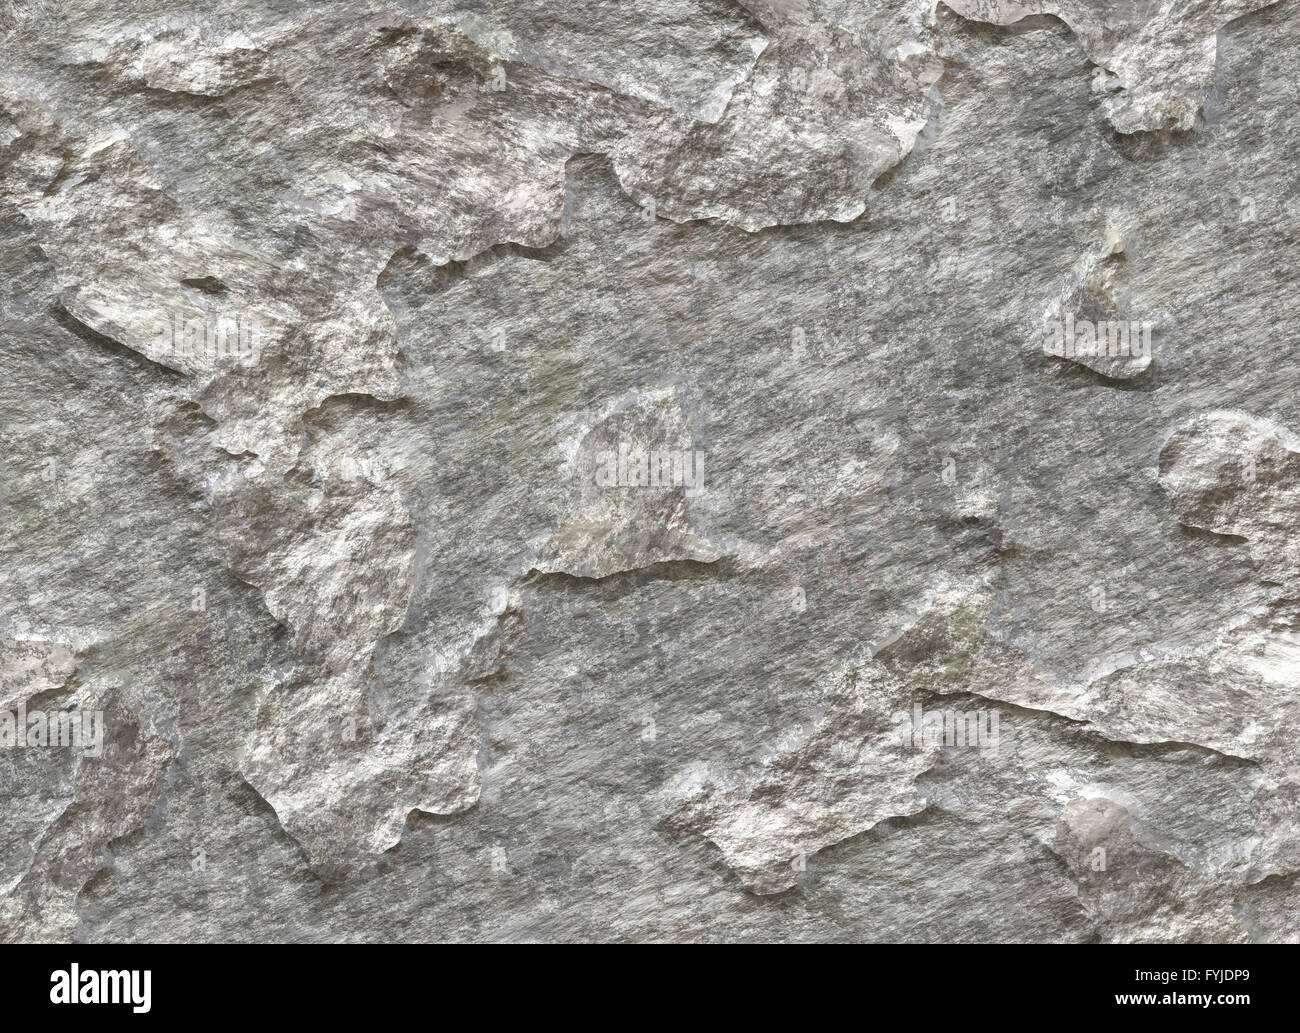 natural rock texture Stock Photo